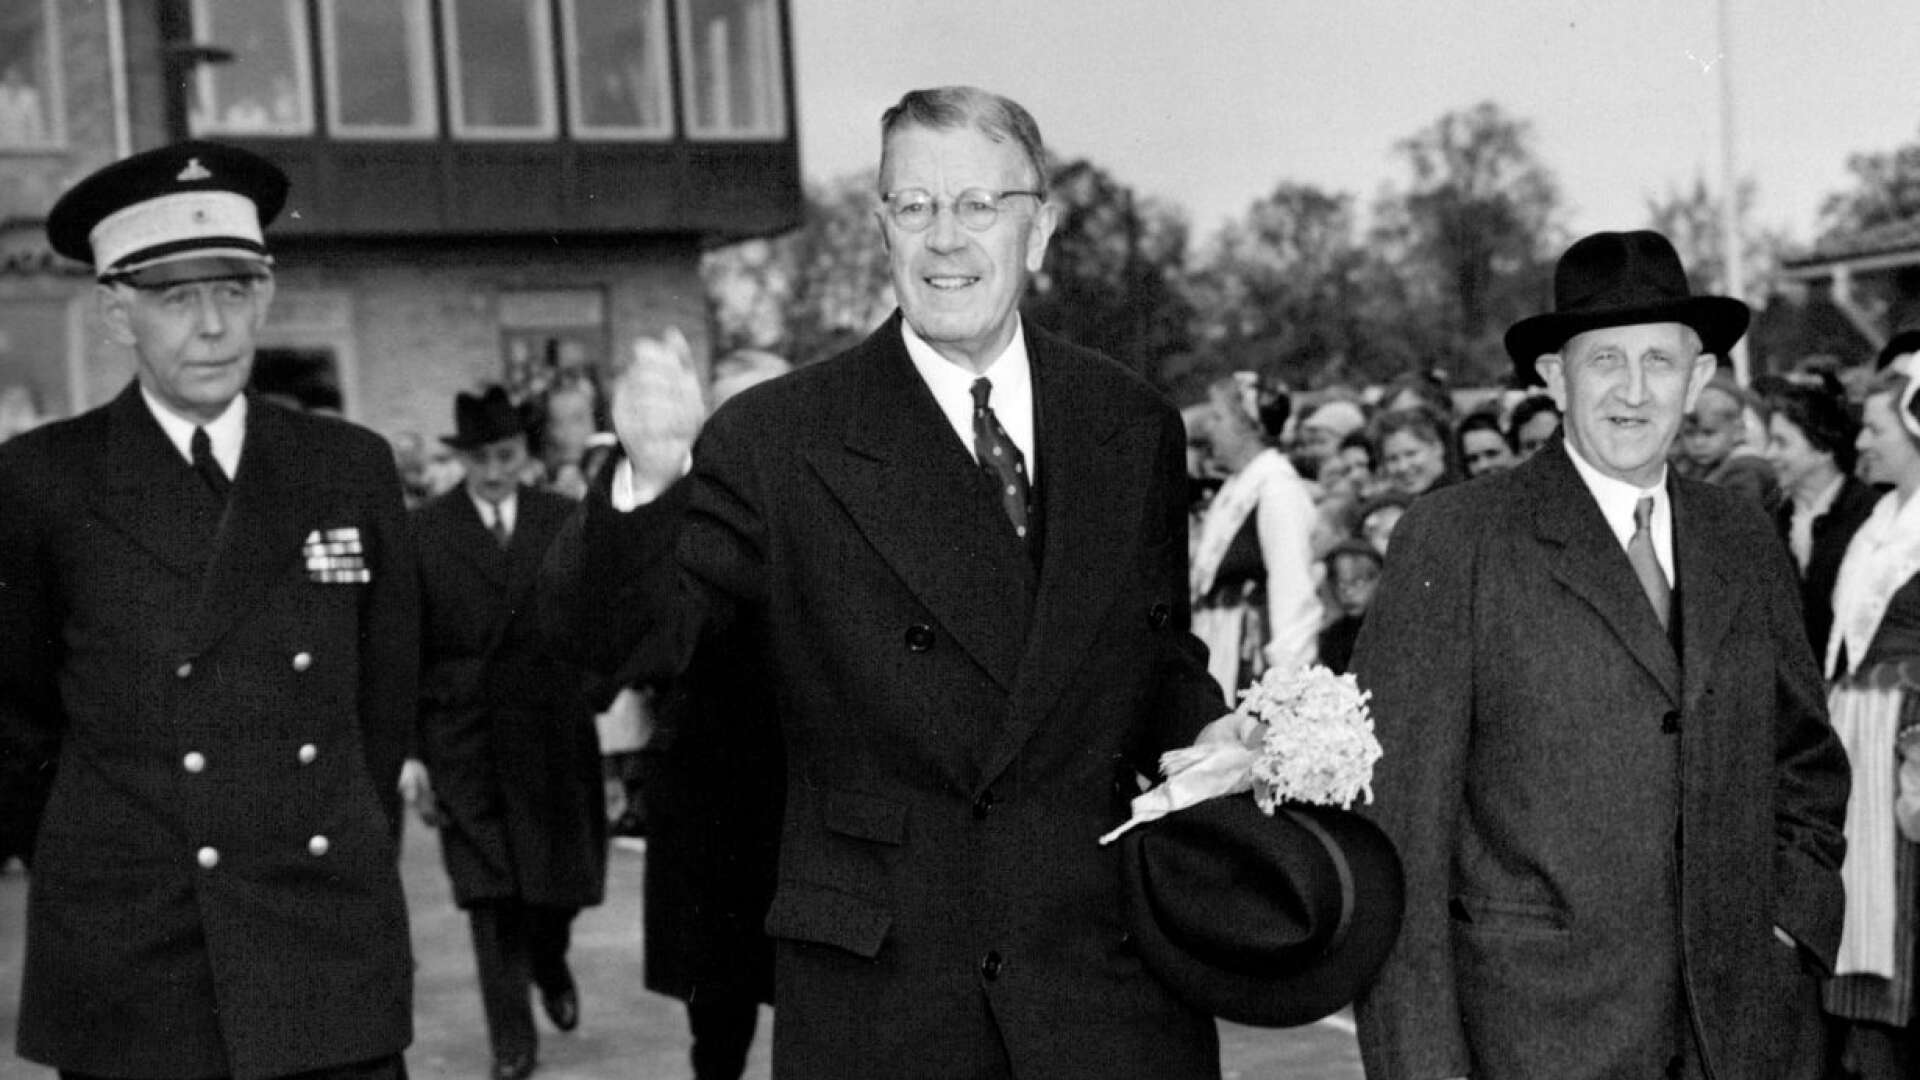 Riksdagsman Martin Skoglund (till höger) under en eriksgata 1953 med kung Gustaf VI Adolf och landshövding Carl Hamilton (till vänster).